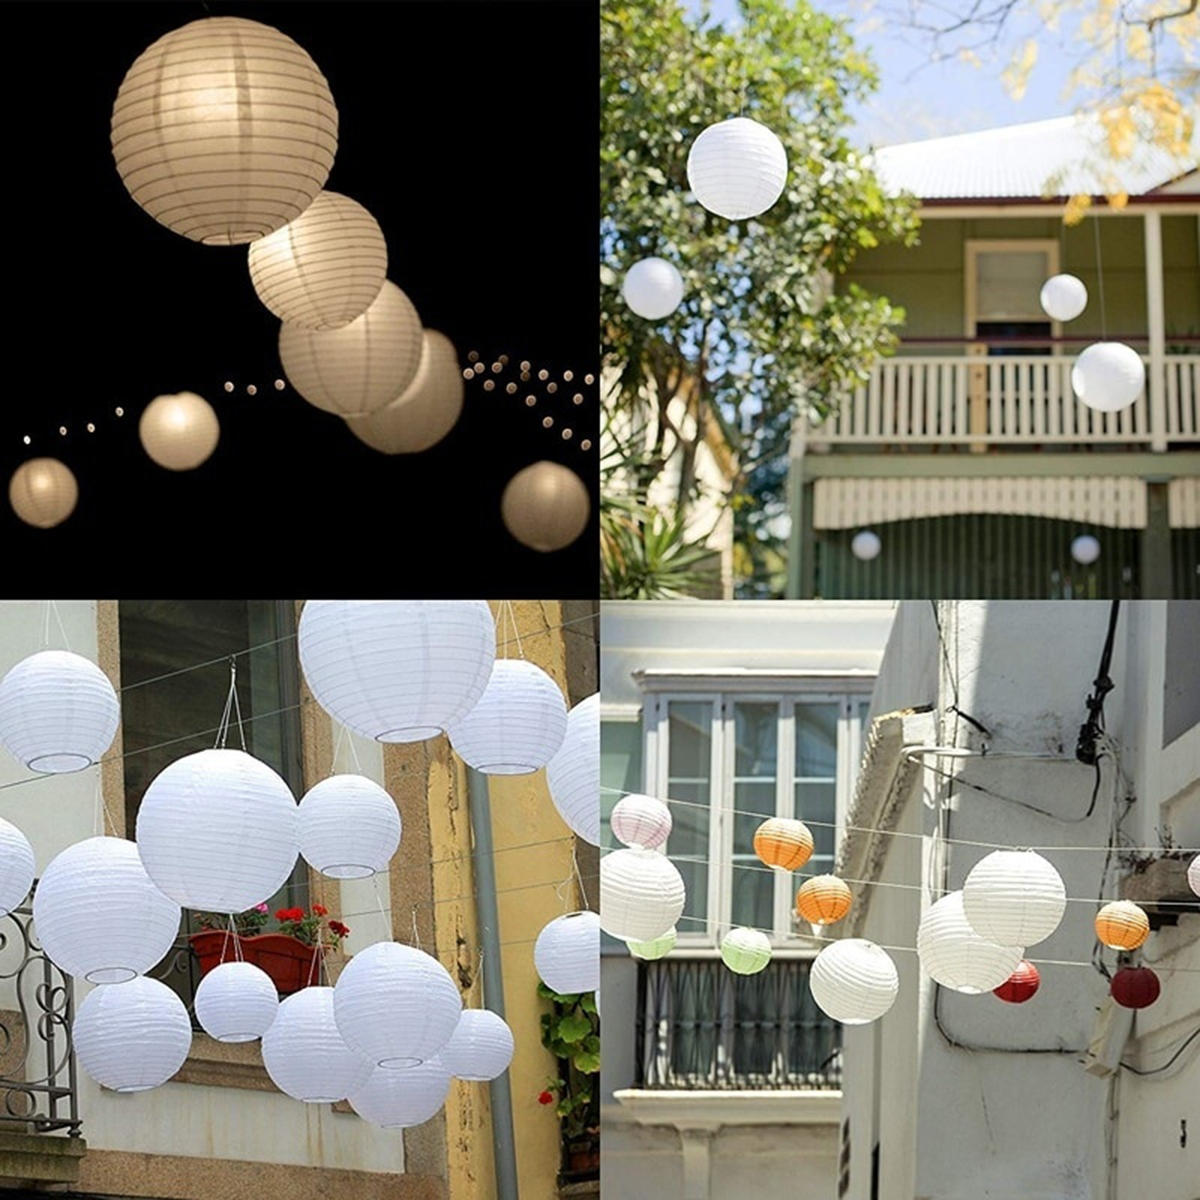 3 STKS Witte ronde papieren lantaarns Chinese hangende decoraties Decoratieve lantaarns voor bruilof